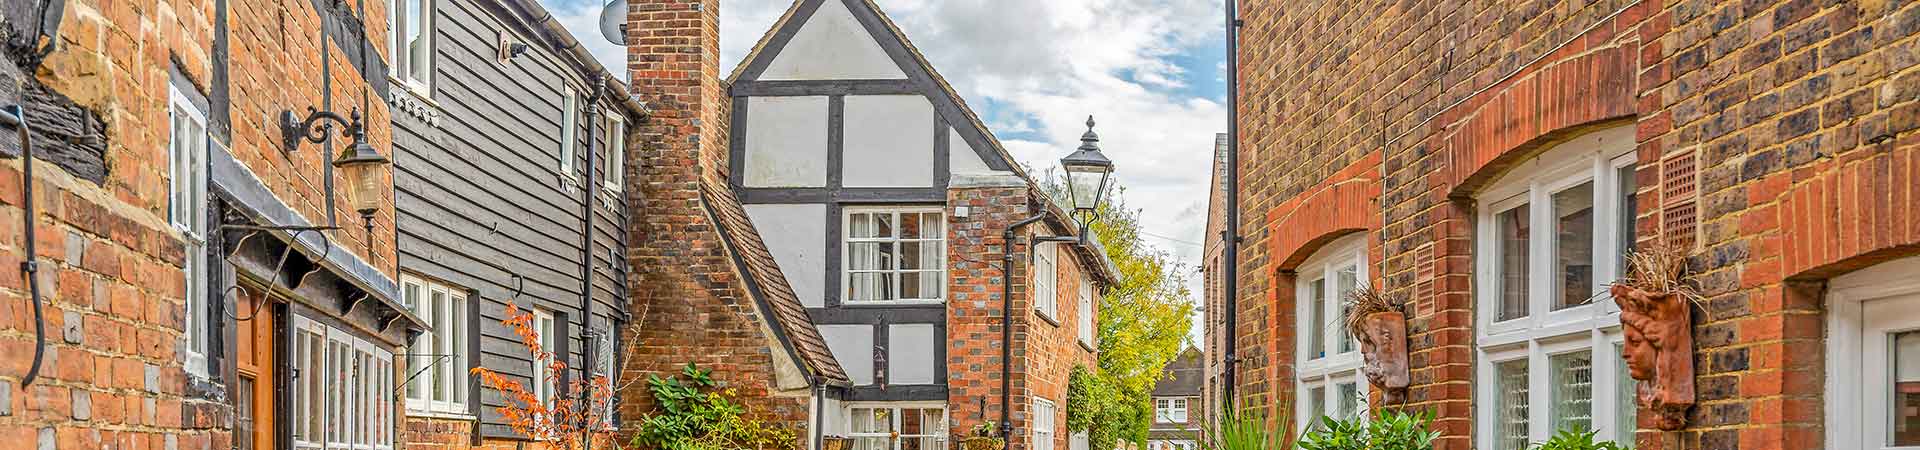 Cottages in Horsham